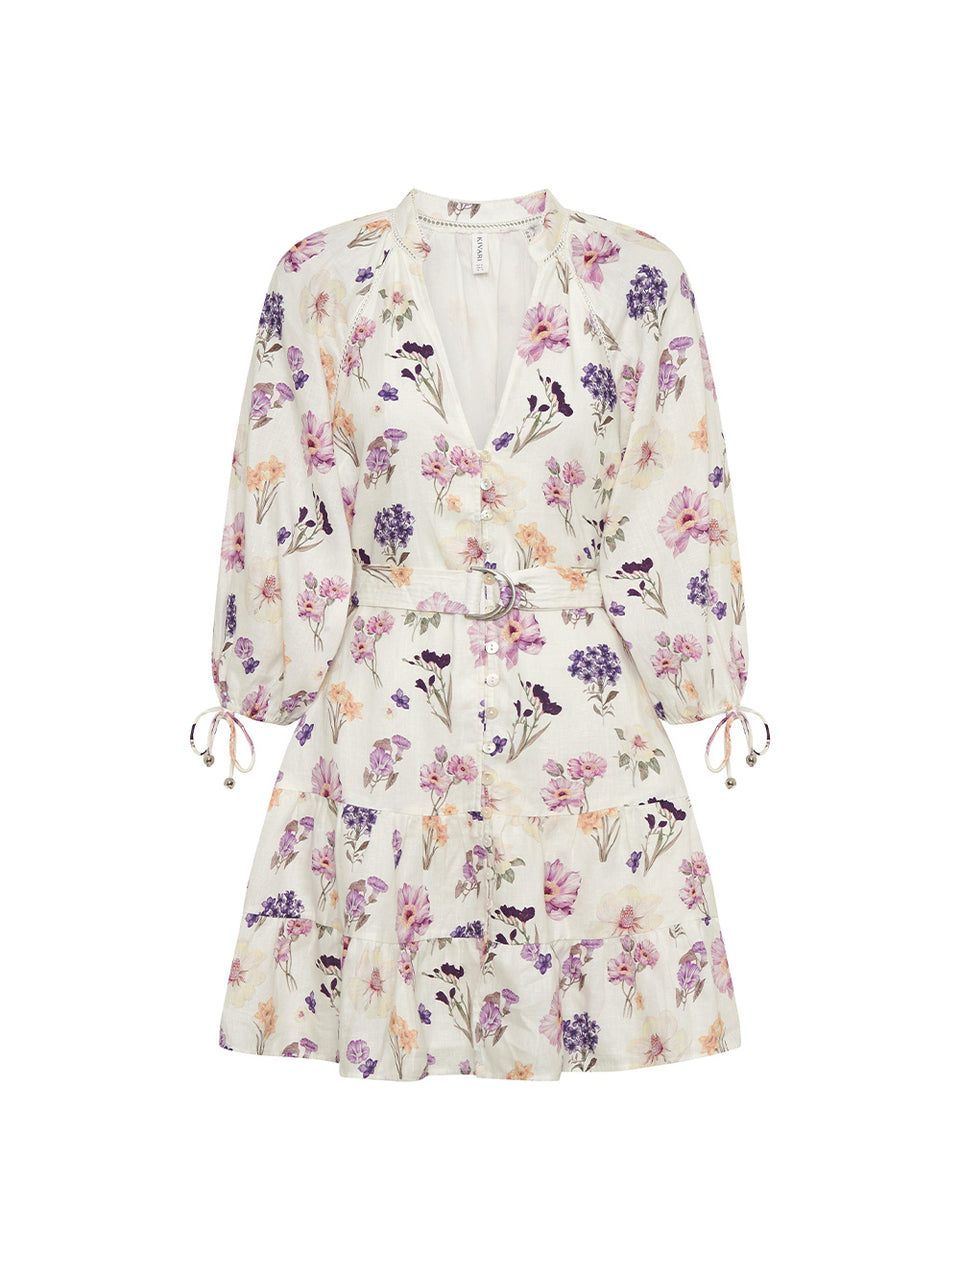 Phoebe Mini Dress KIVARI | Ivory and purple floral mini dress